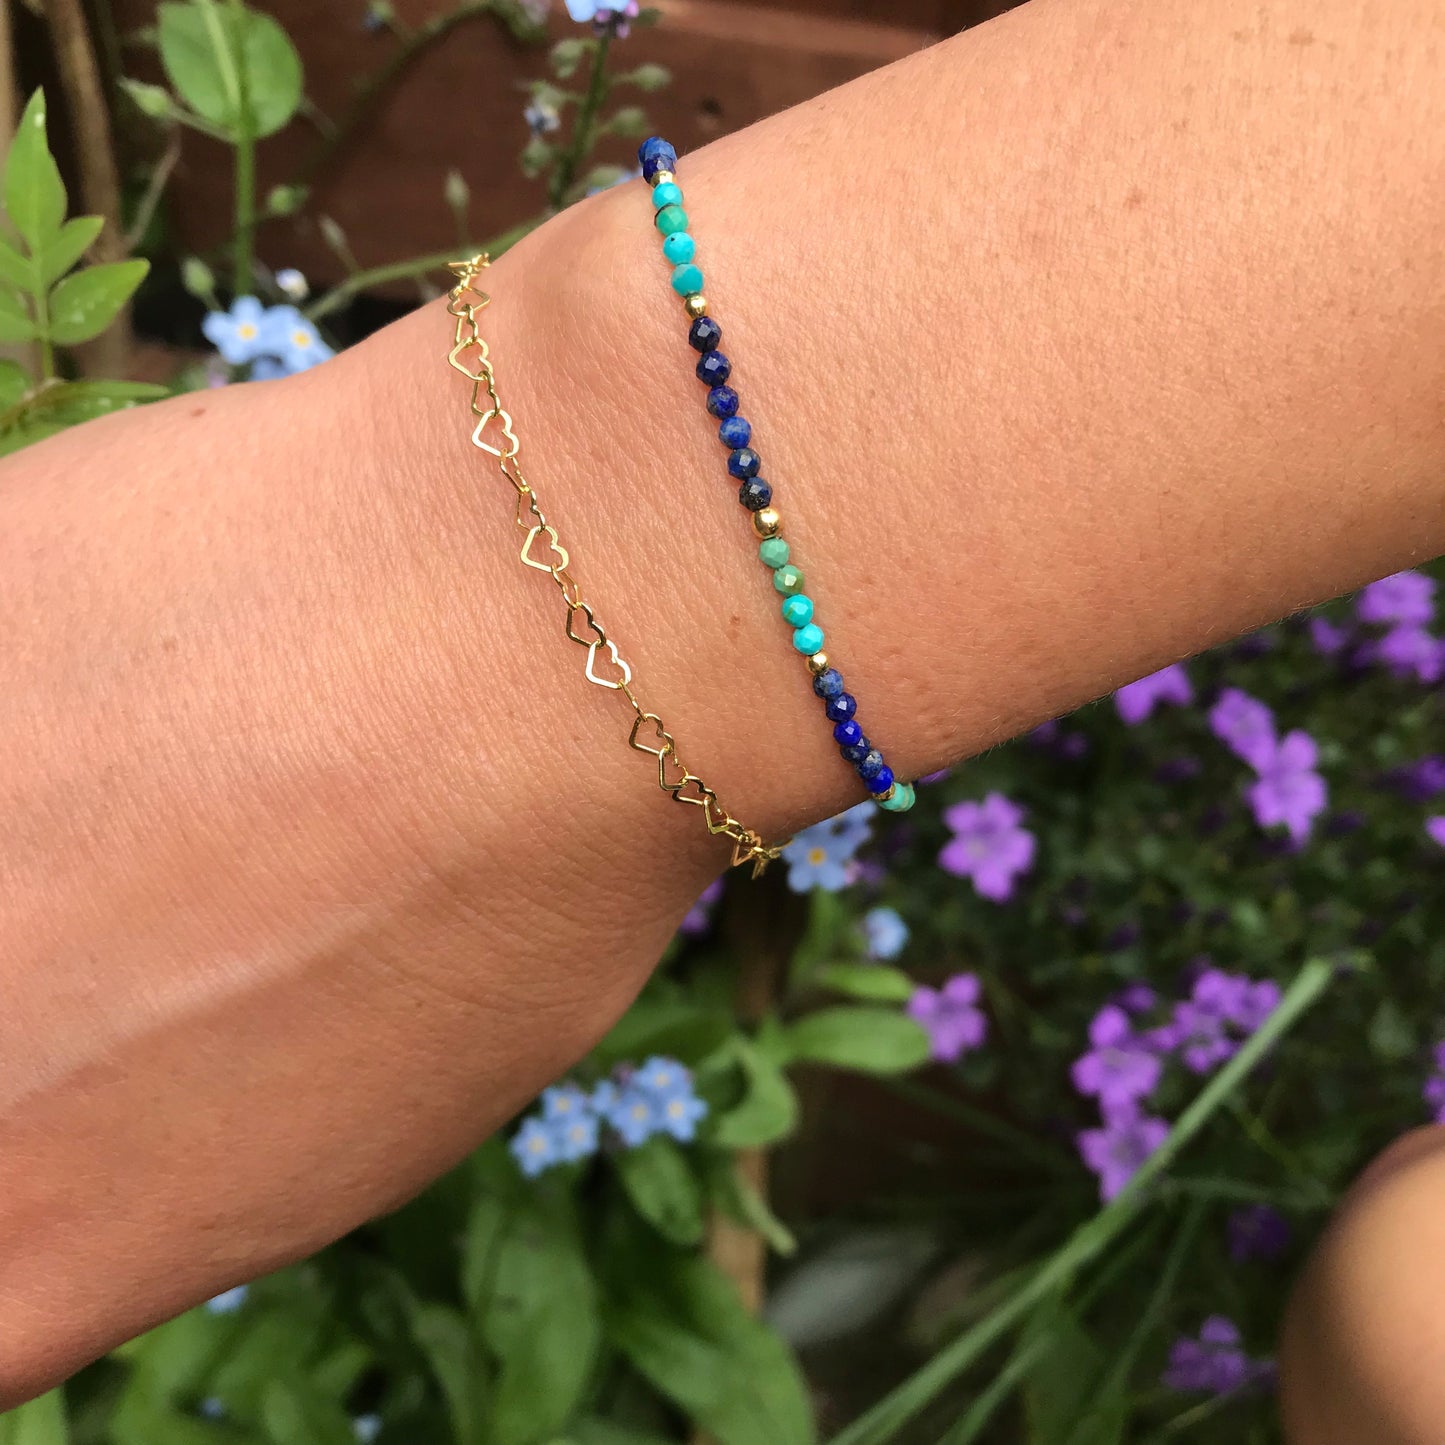 Turquoise and Lapis Lazuli bracelet